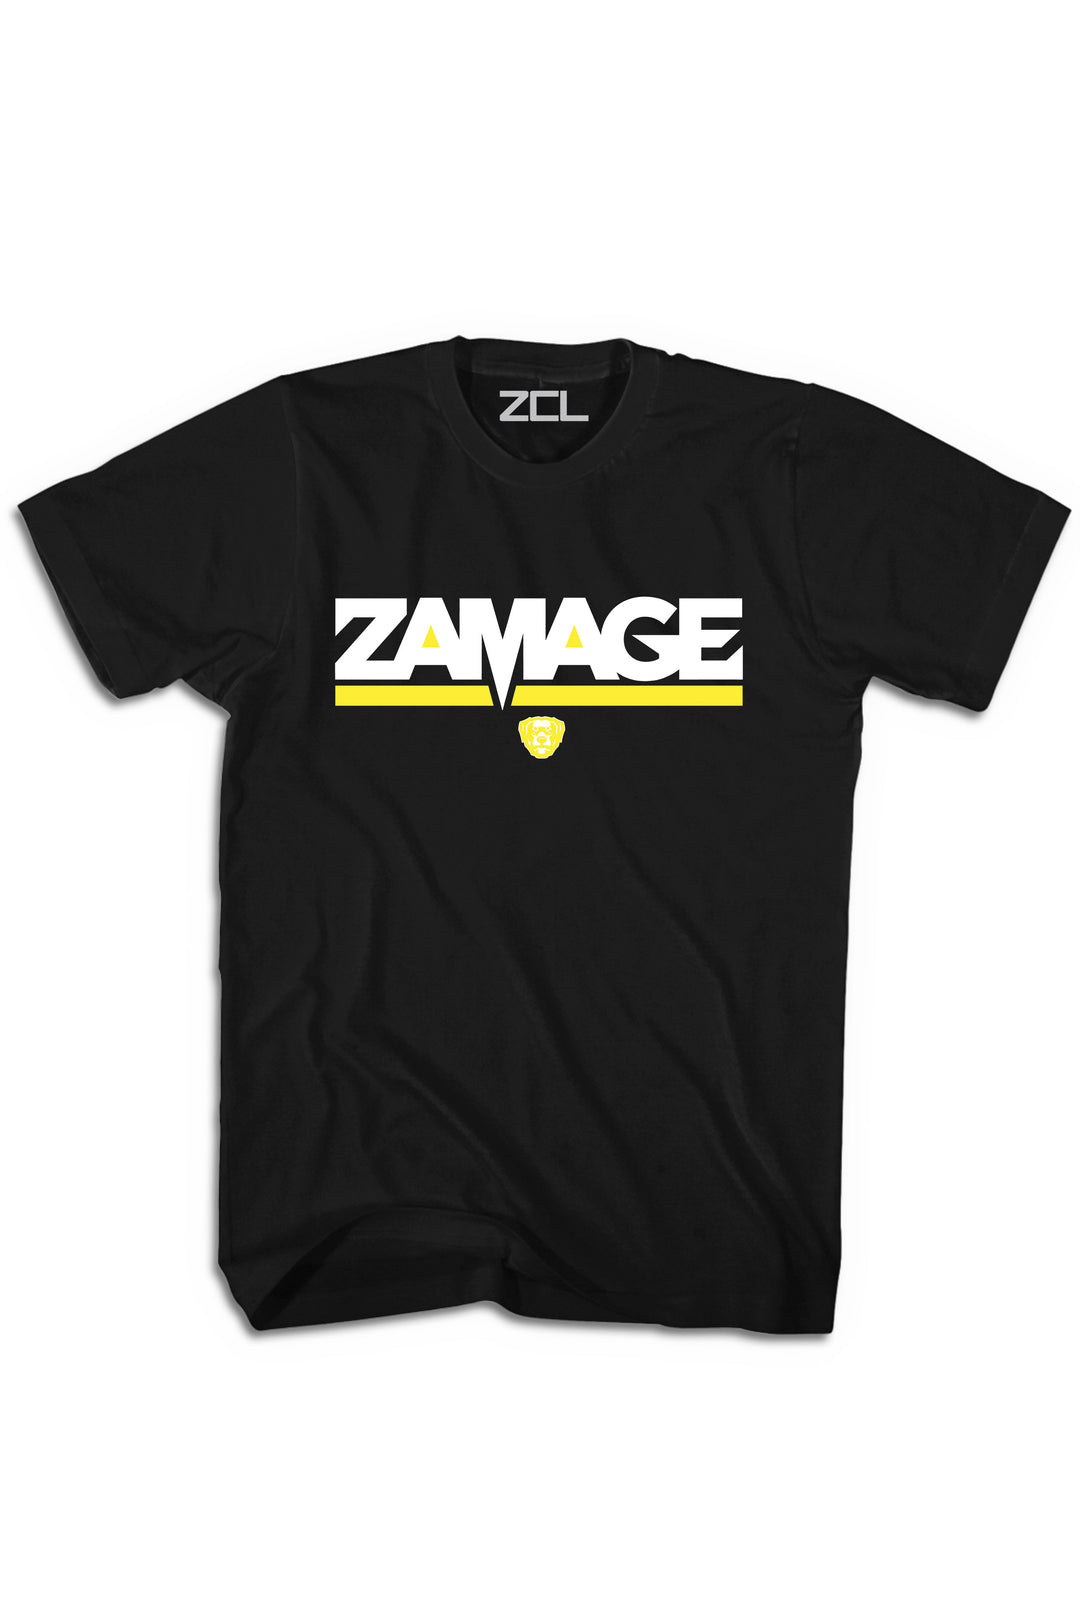 Zamage Logo Tee (Yellow) - Zamage